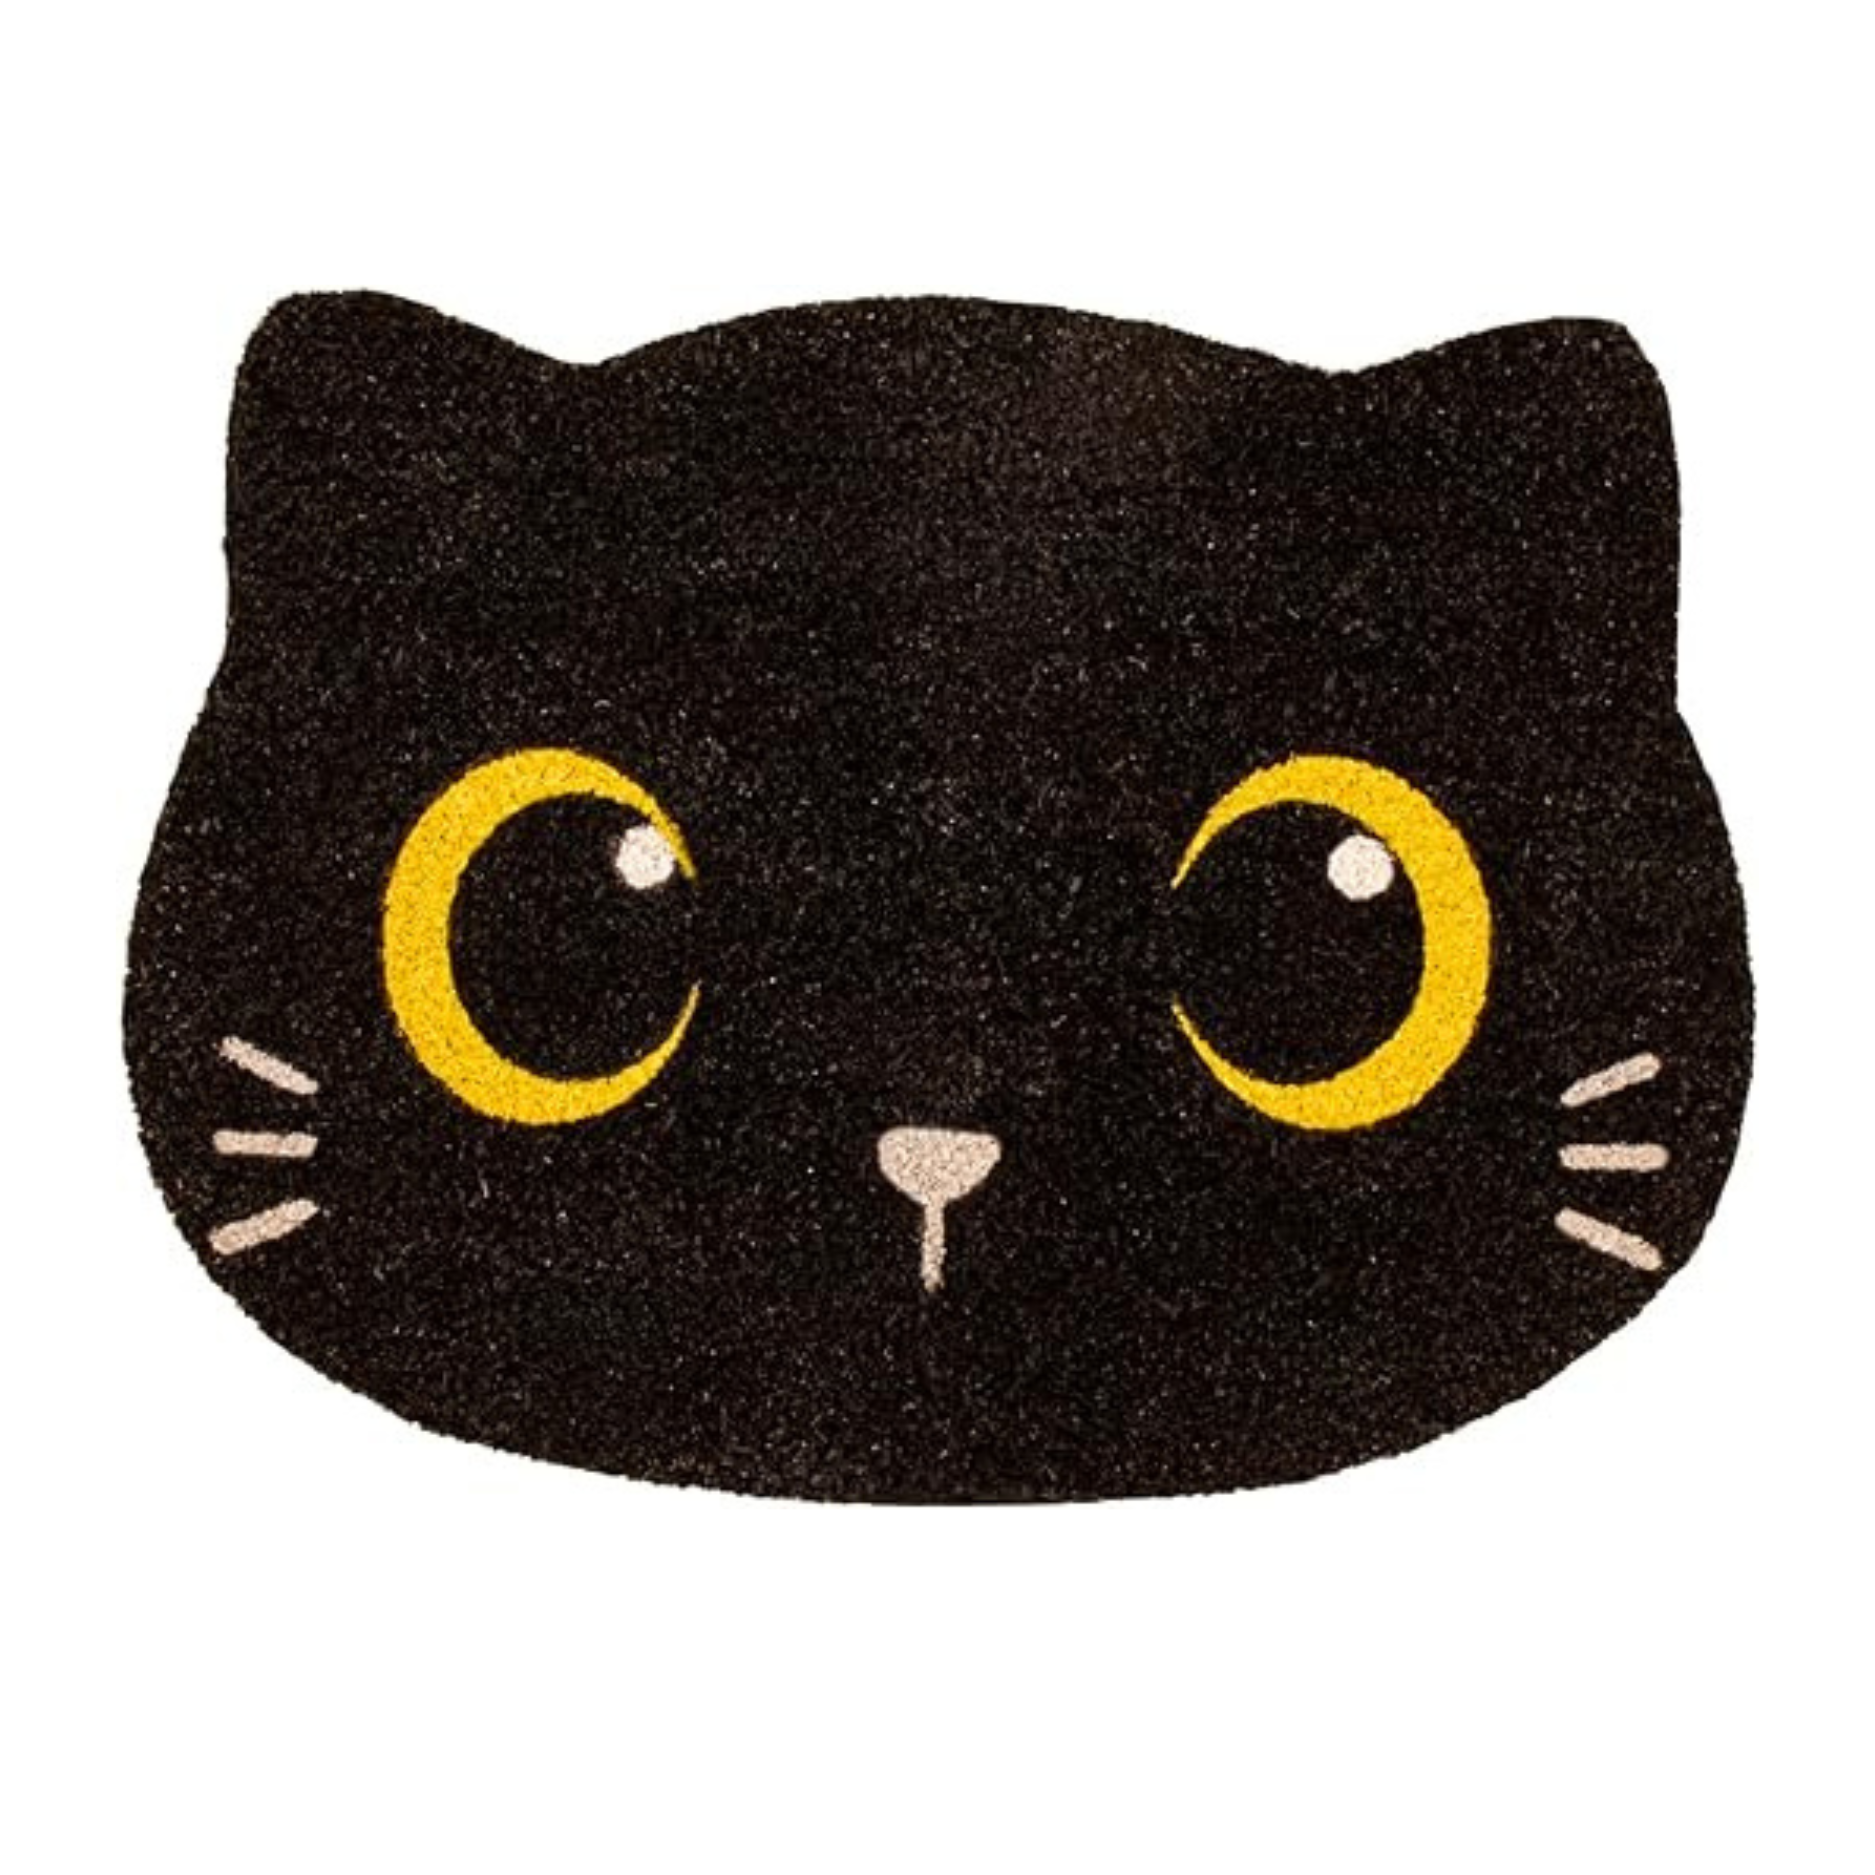 Zerbino Black cat